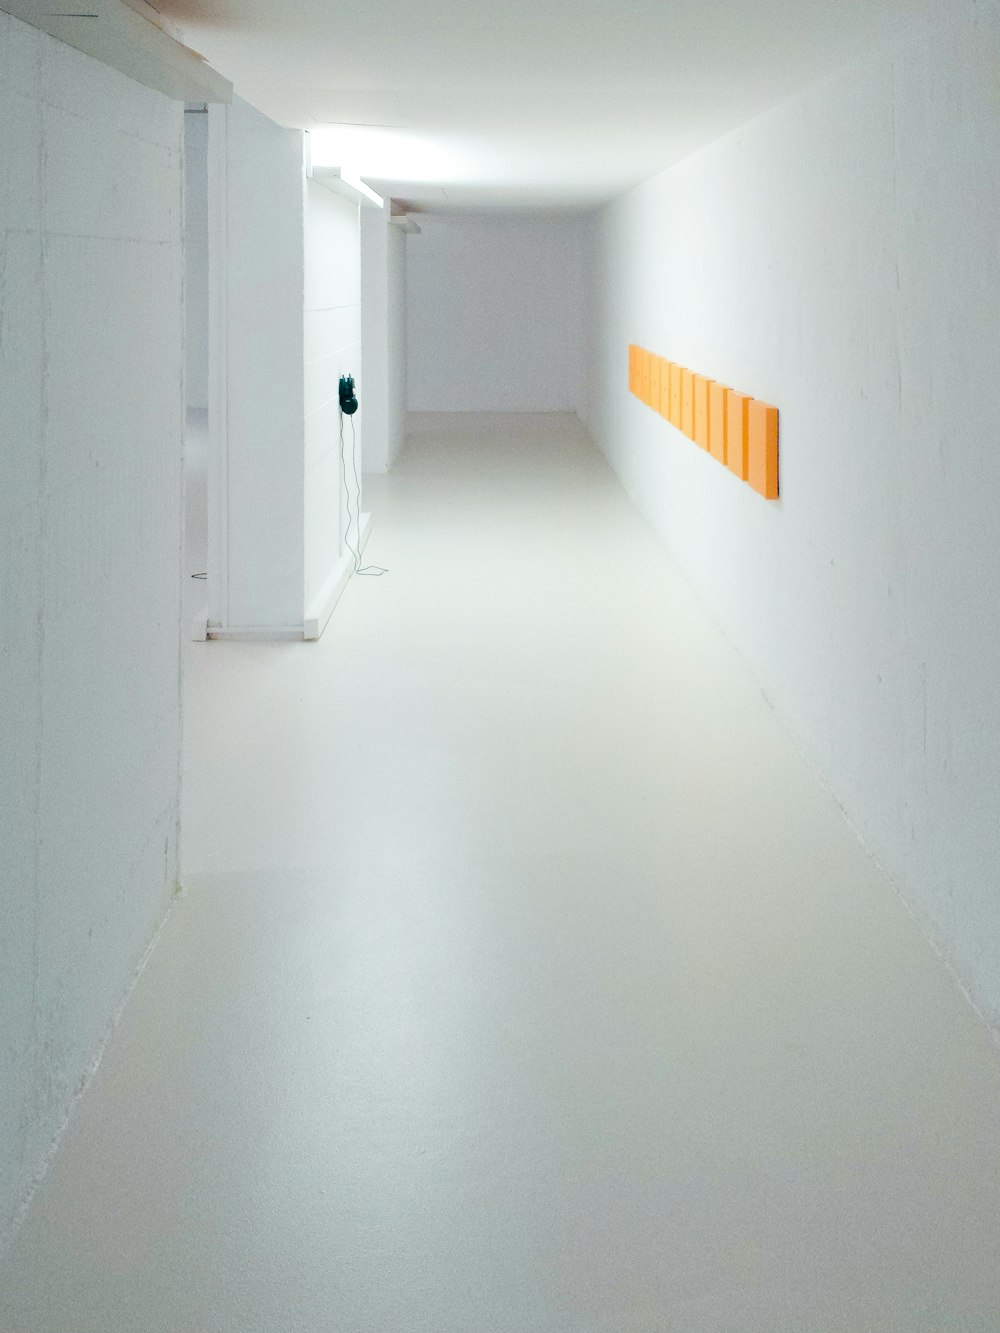 empty hallway between white walls